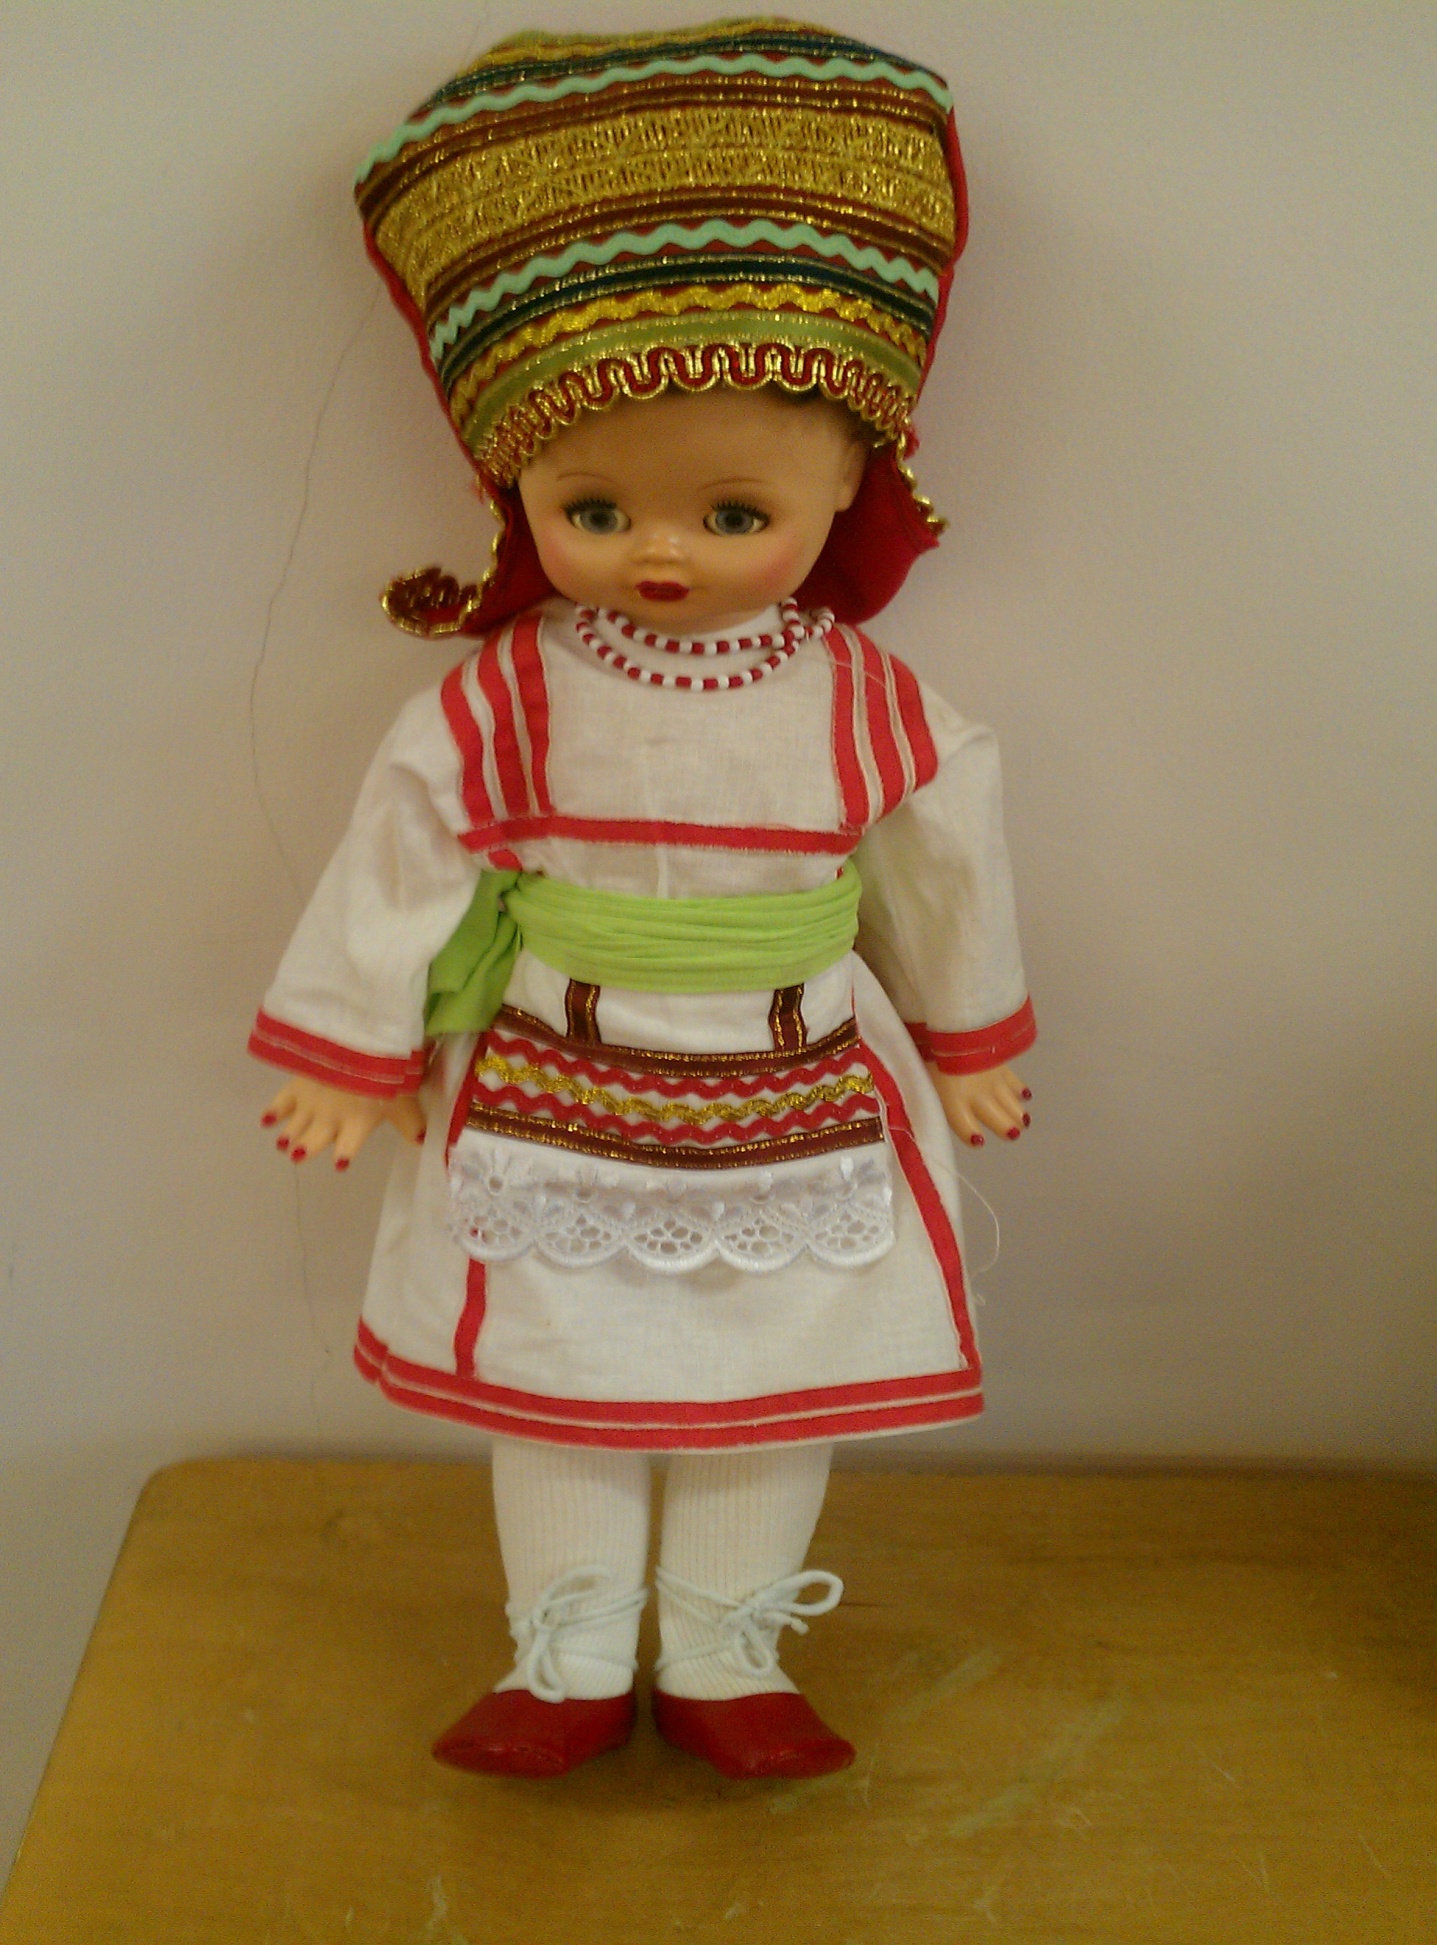 Проект «Мини-музей. Куклы в национальных костюмах»